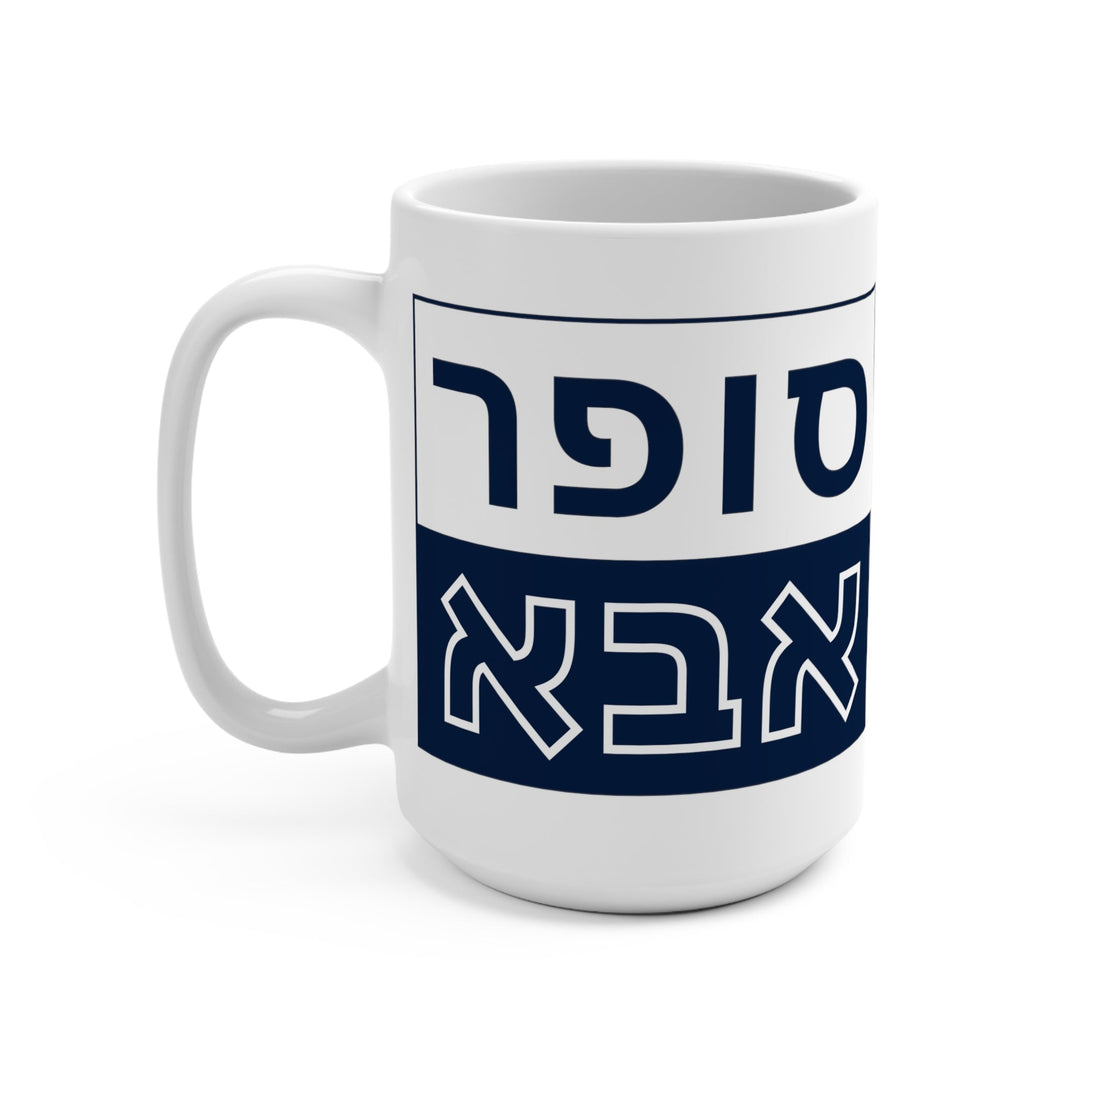 Super Abba Mug (Hebrew) - Shop Israel